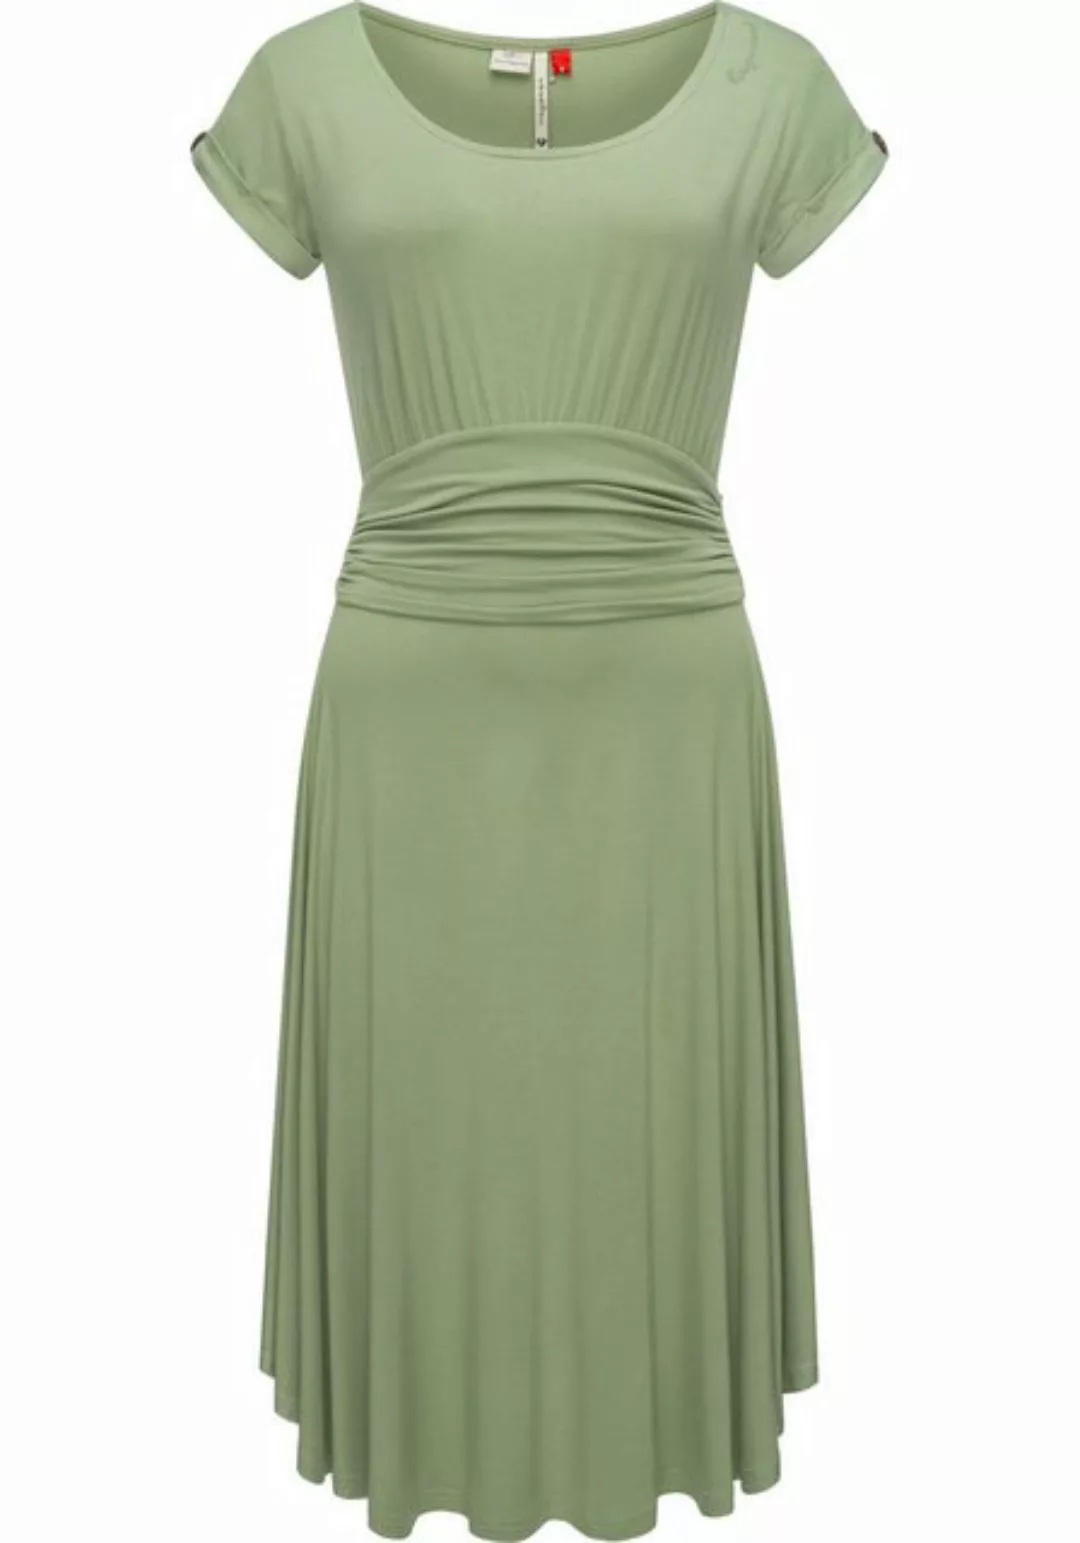 Ragwear Sommerkleid Yvone Solid leichtes Jersey-Kleid mit Taillengürtel günstig online kaufen